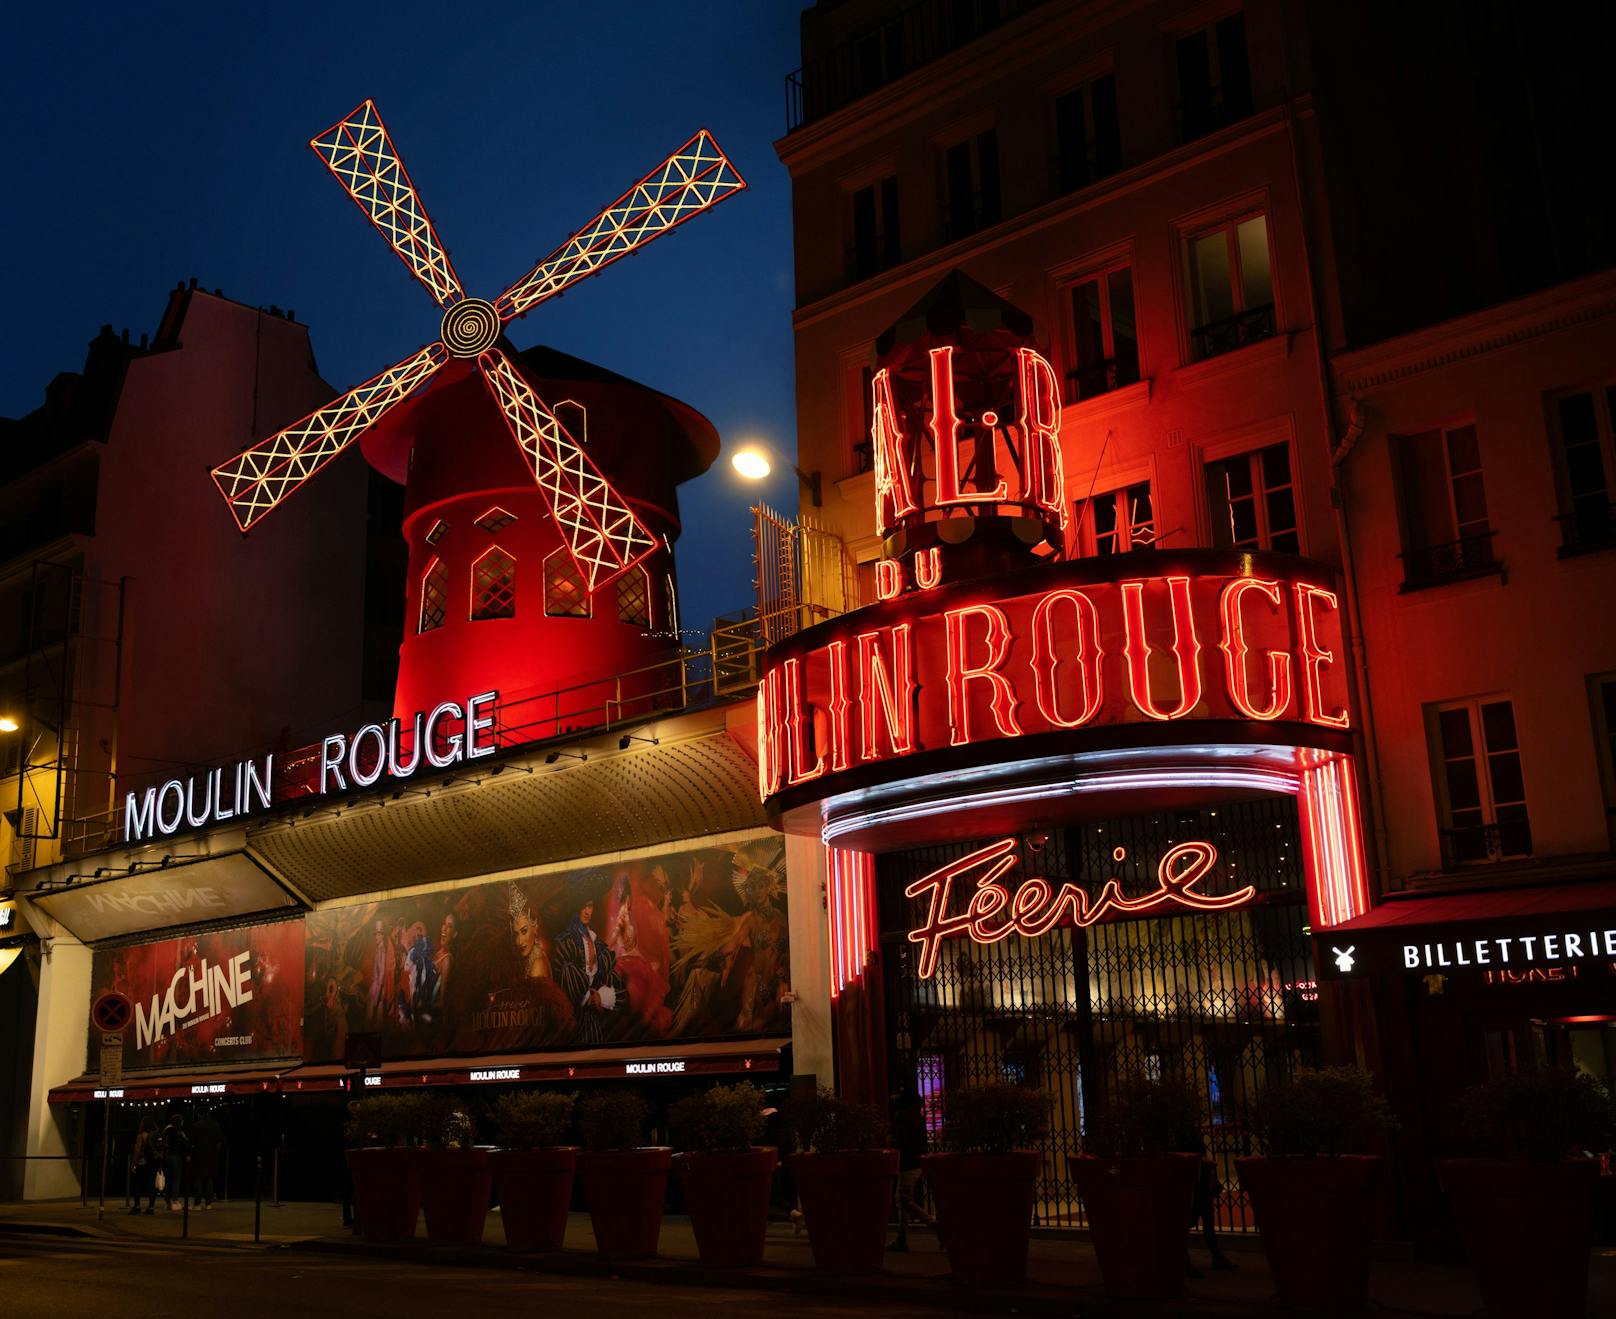 Die Gäste auch in den Genuss einer private Tour durch das Moulin Rouge, inklusive dem Backstage-Bereich und der Show "<a href="http://www.moulinrouge.fr/revue-feerie" target="_blank" rel="noopener noreferrer">Féerie</a>" sowie ein Drei-Gang-Menü vom Chefkoch Arnaud Demerville.